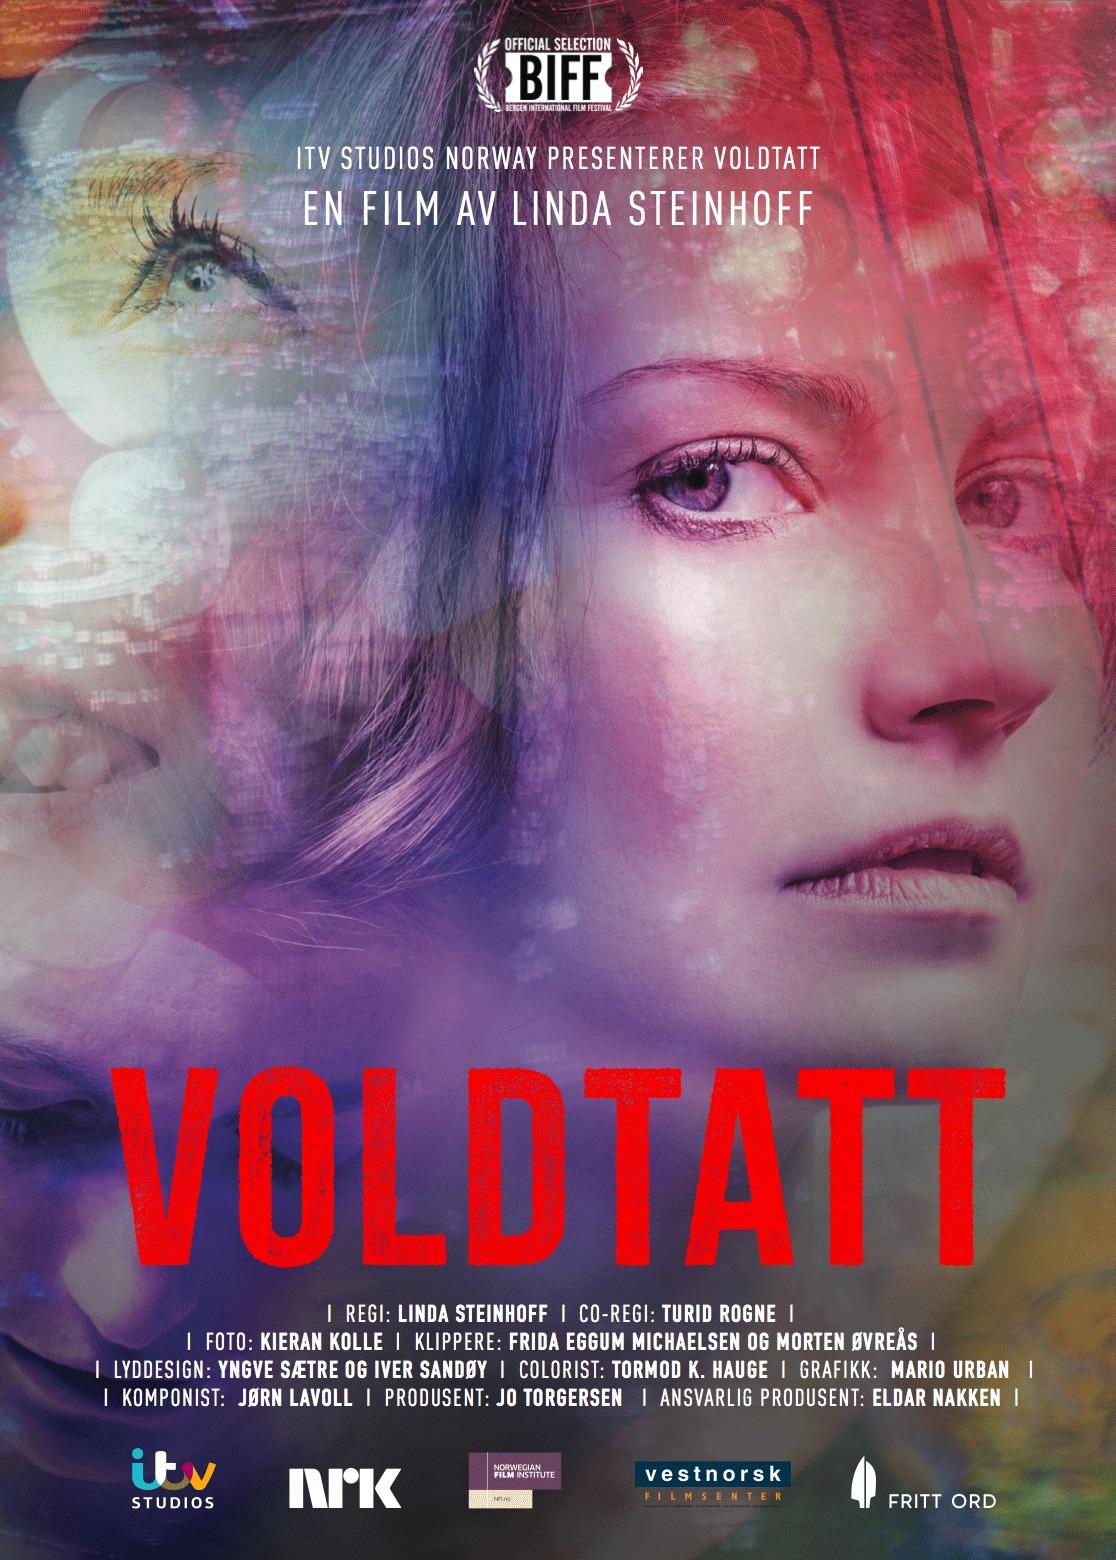 The norwegian Filmposter for the the Film VOLDTATT (2015)